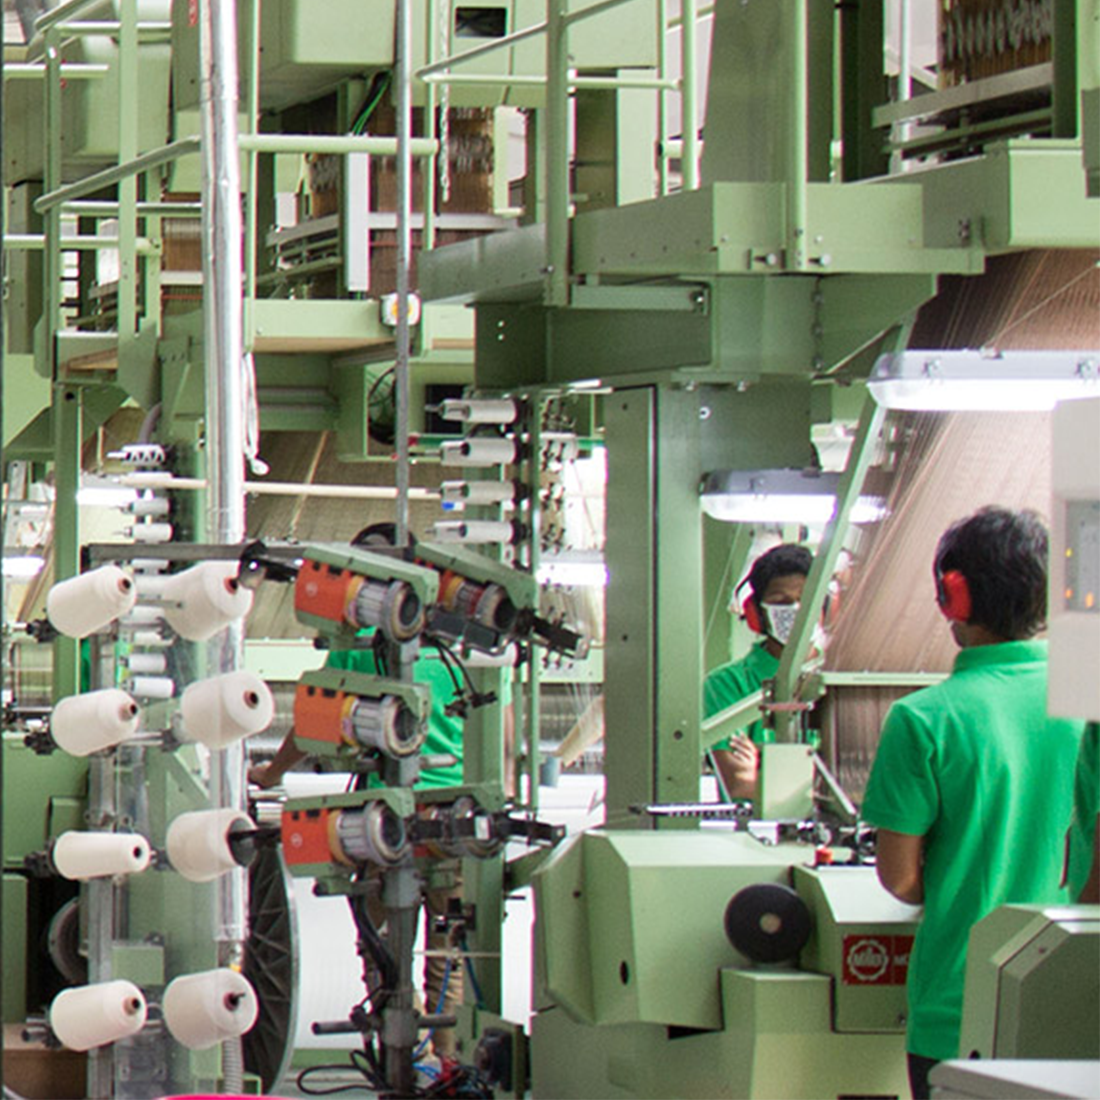 Man sieht eine Produktionshalle mit diversen Maschinen, wo Webetiketten gefertigt werden. An den Maschinen stehen Männer mit grünen Shirt und sie tragen alle einen roten Gehörschutz